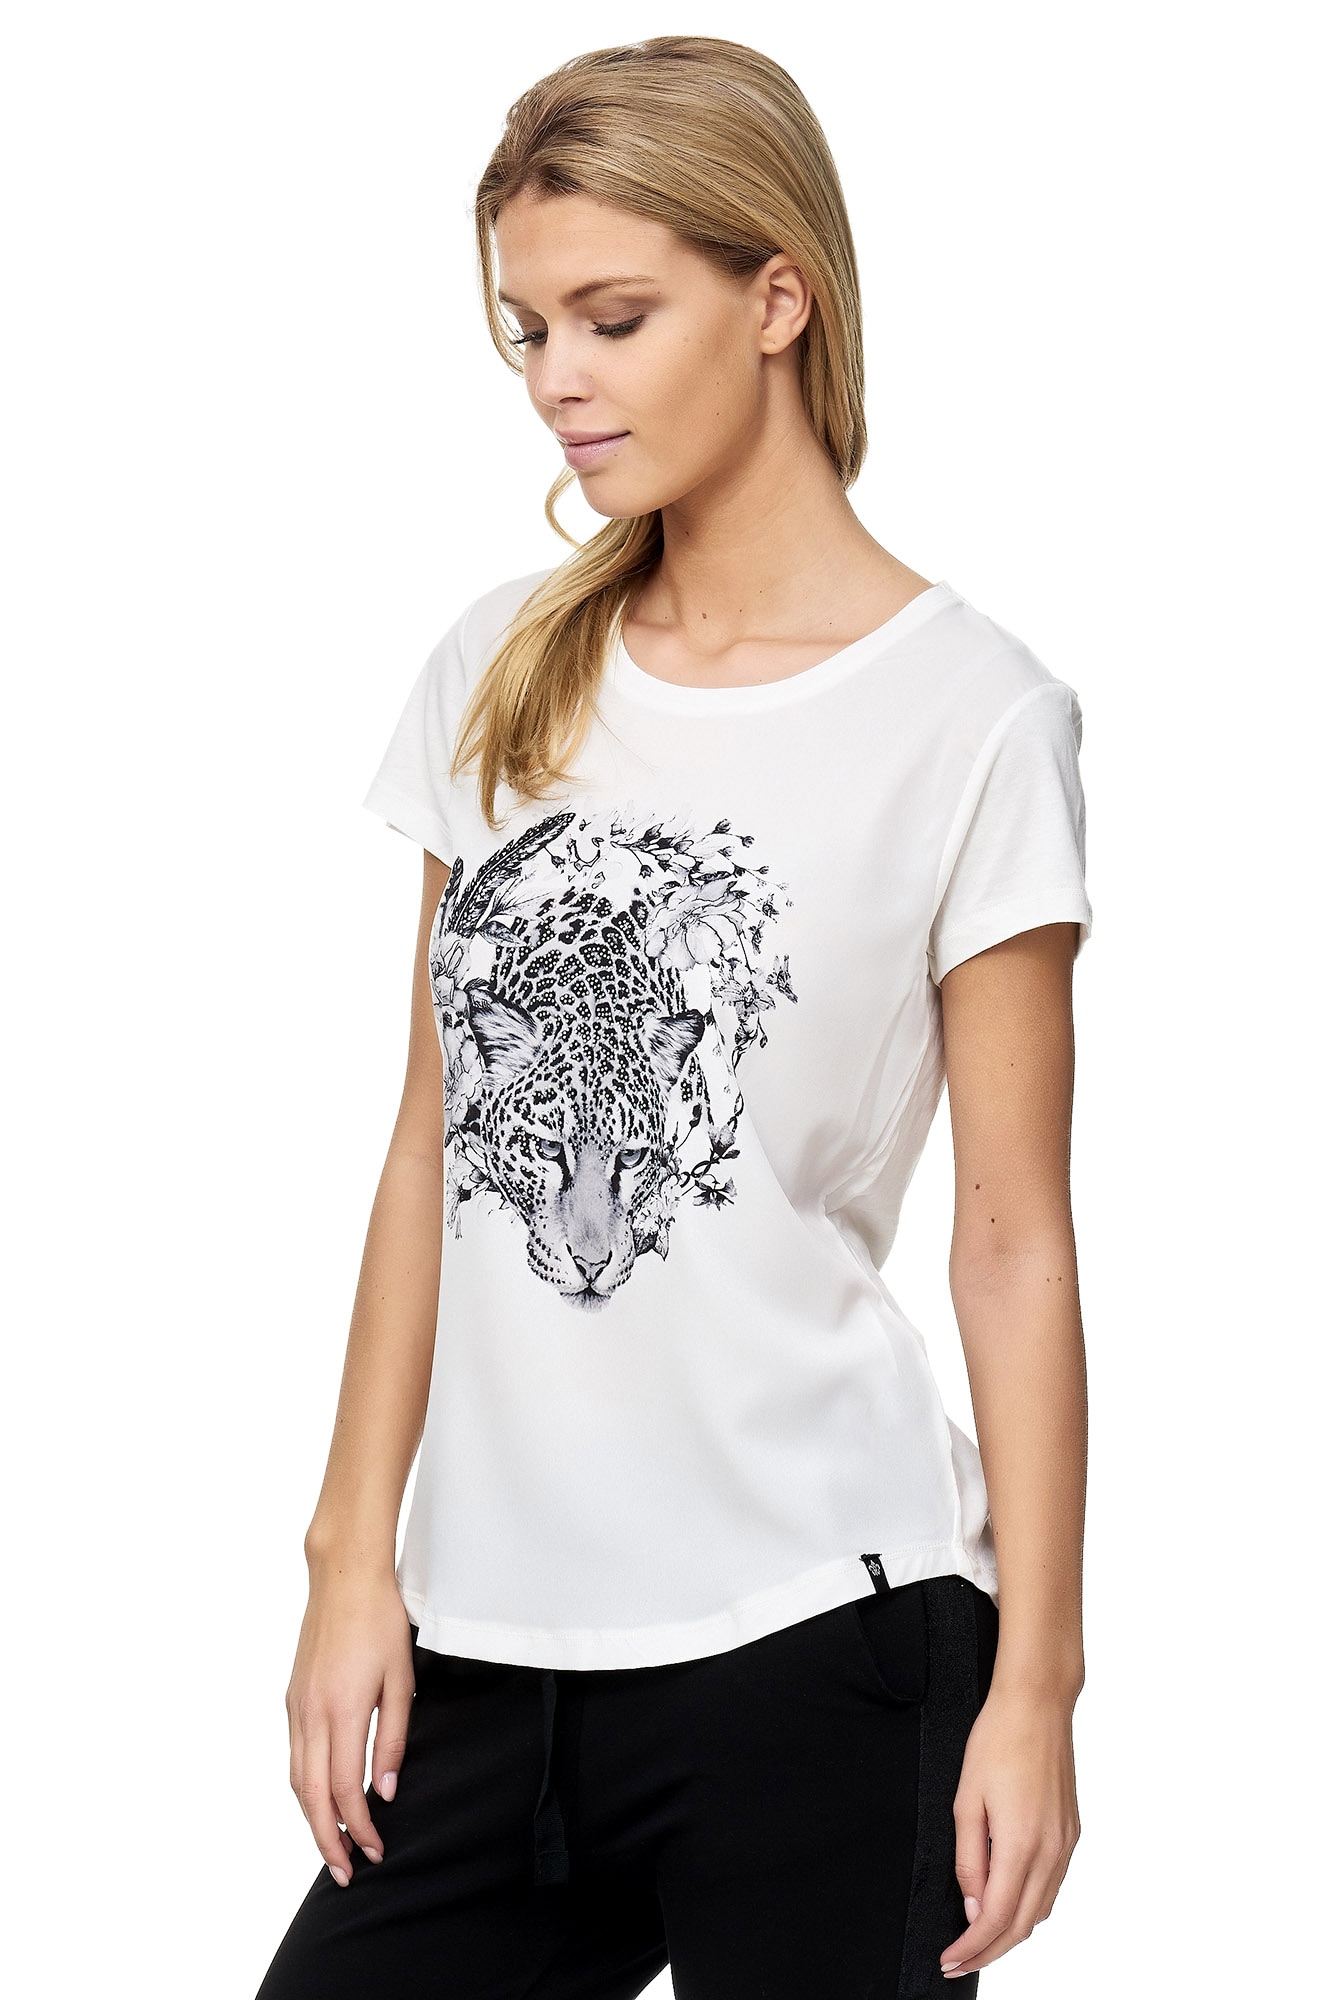 Decay T-Shirt, mit Leoparden-Aufdruck shoppen